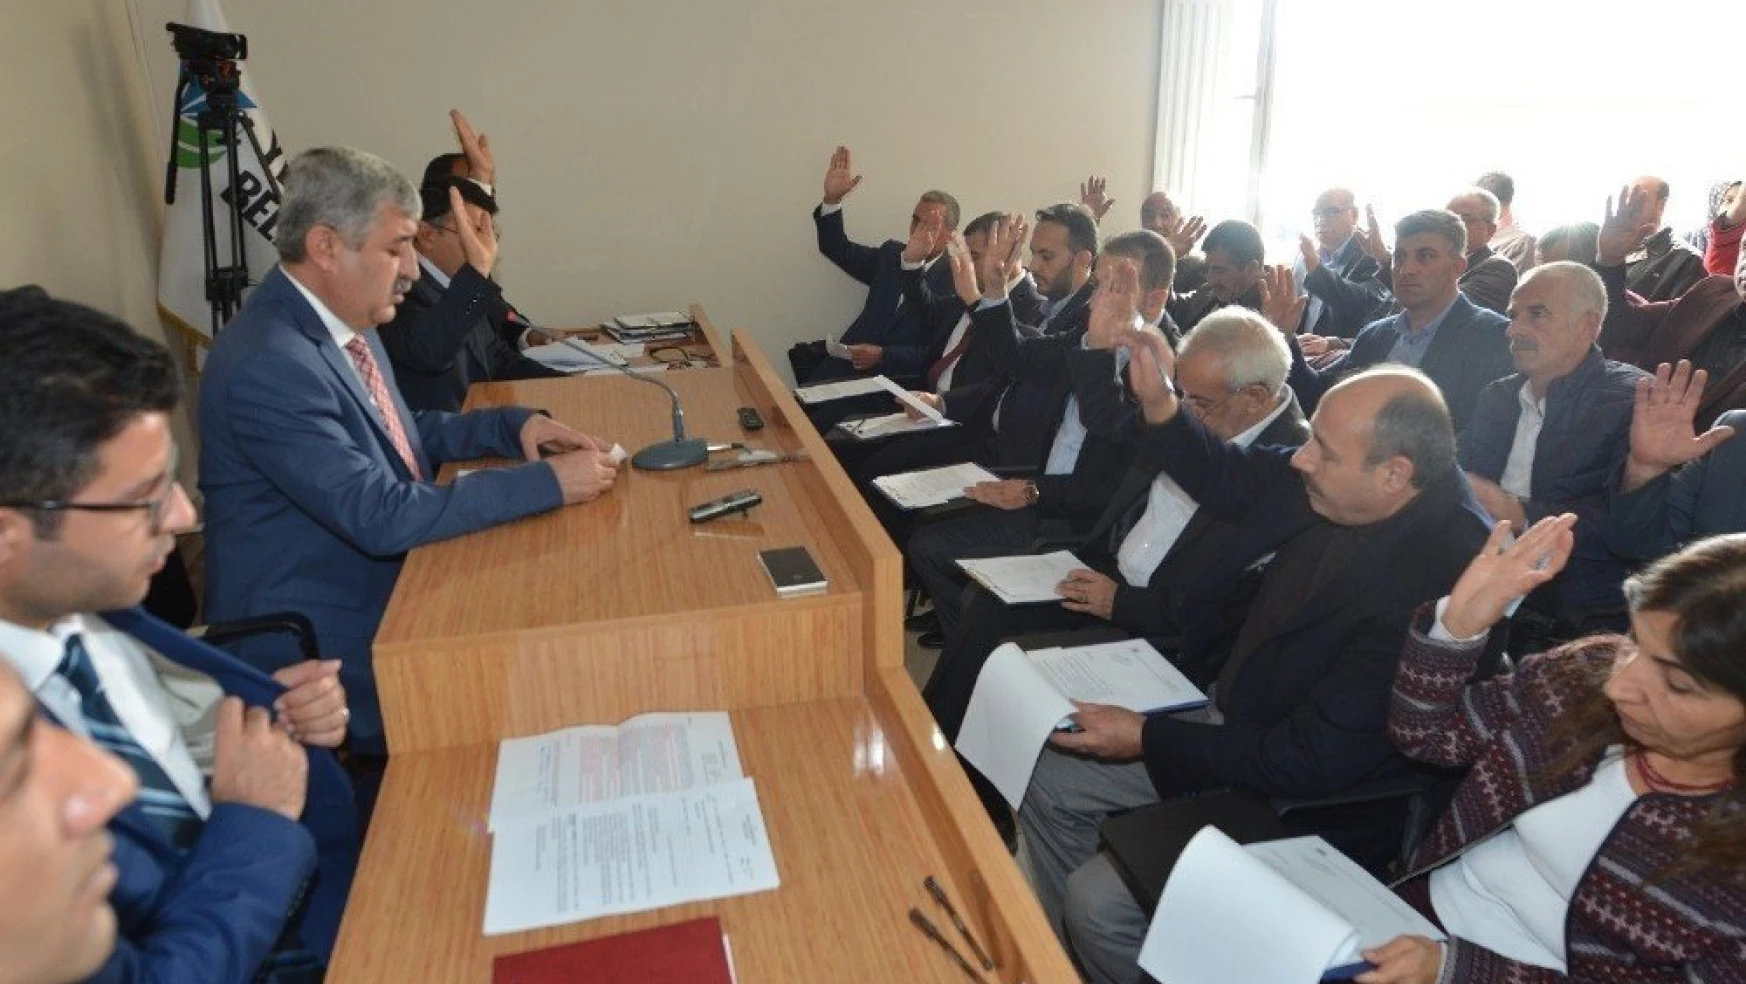 Yeşilyurt Belediye Meclisi kasım ayı çalışmalarına başladı
